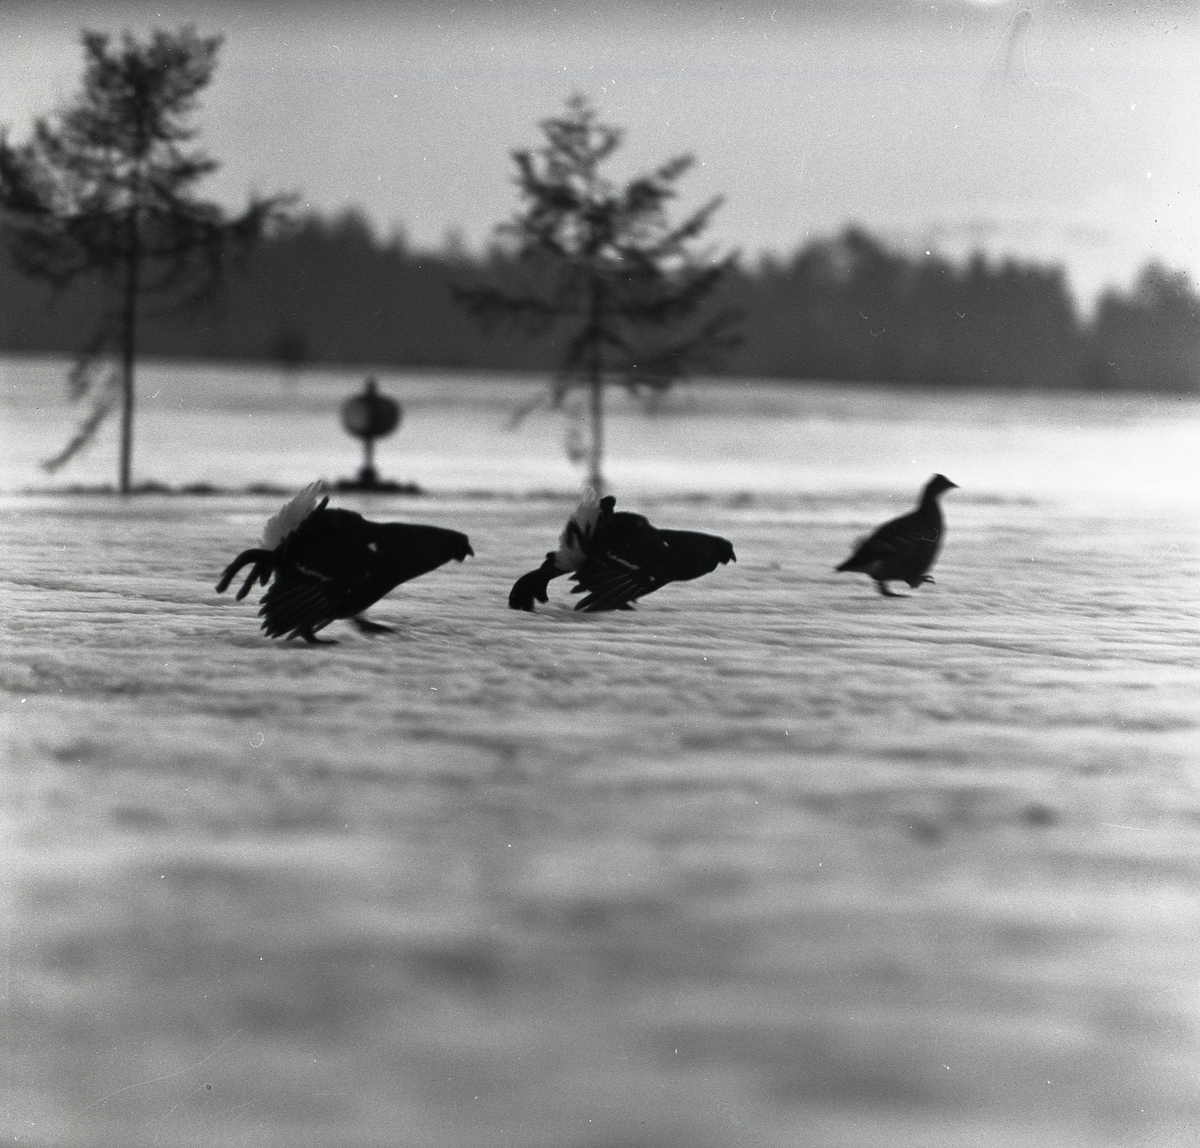 Tre stycken orrar springer efter varandra vid F15 i Söderhamn den 30 januari 1957.